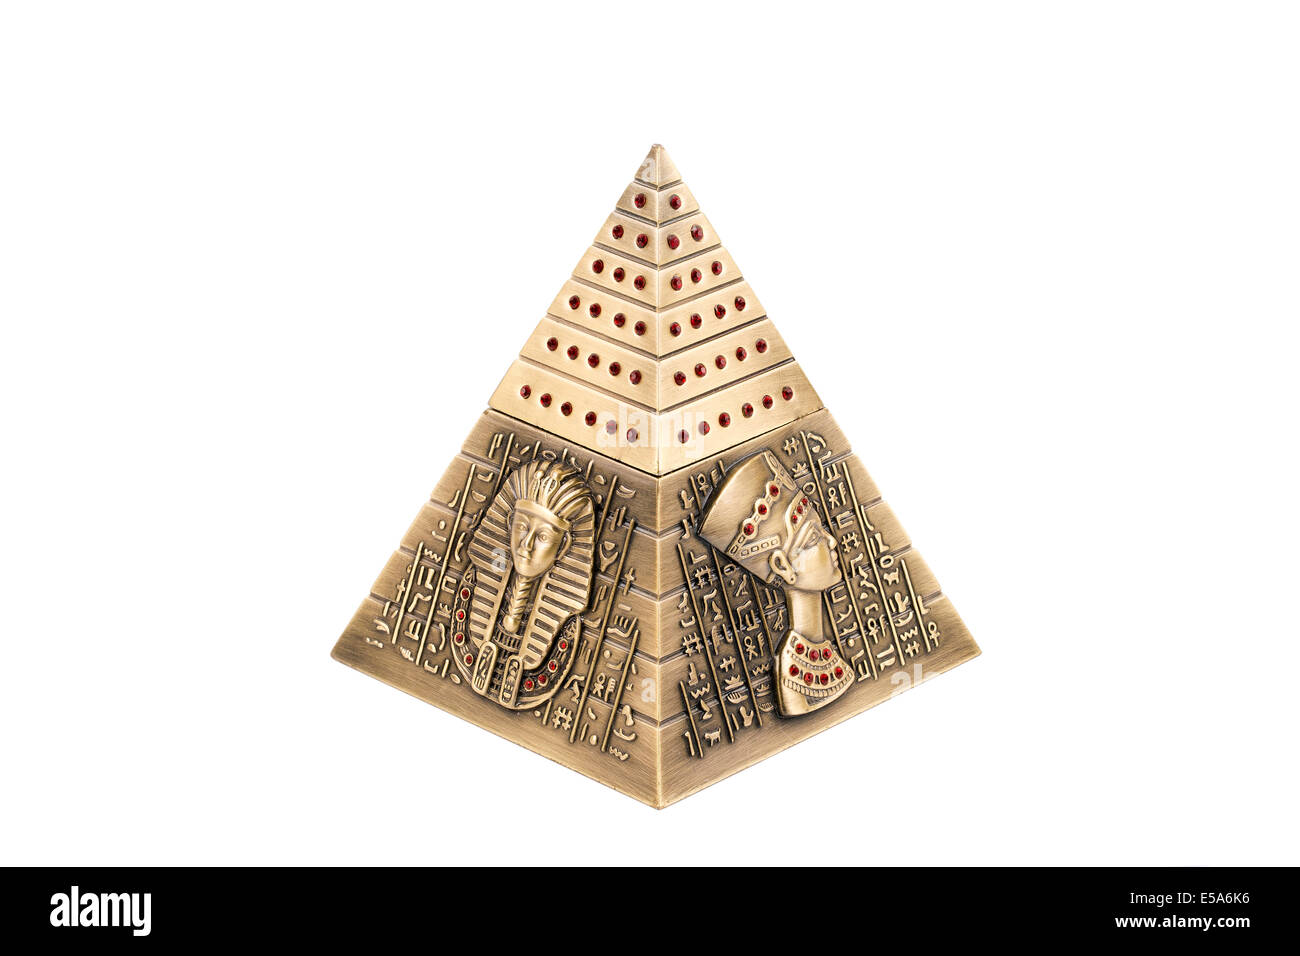 Pyramide égyptienne, sur un fond blanc Banque D'Images